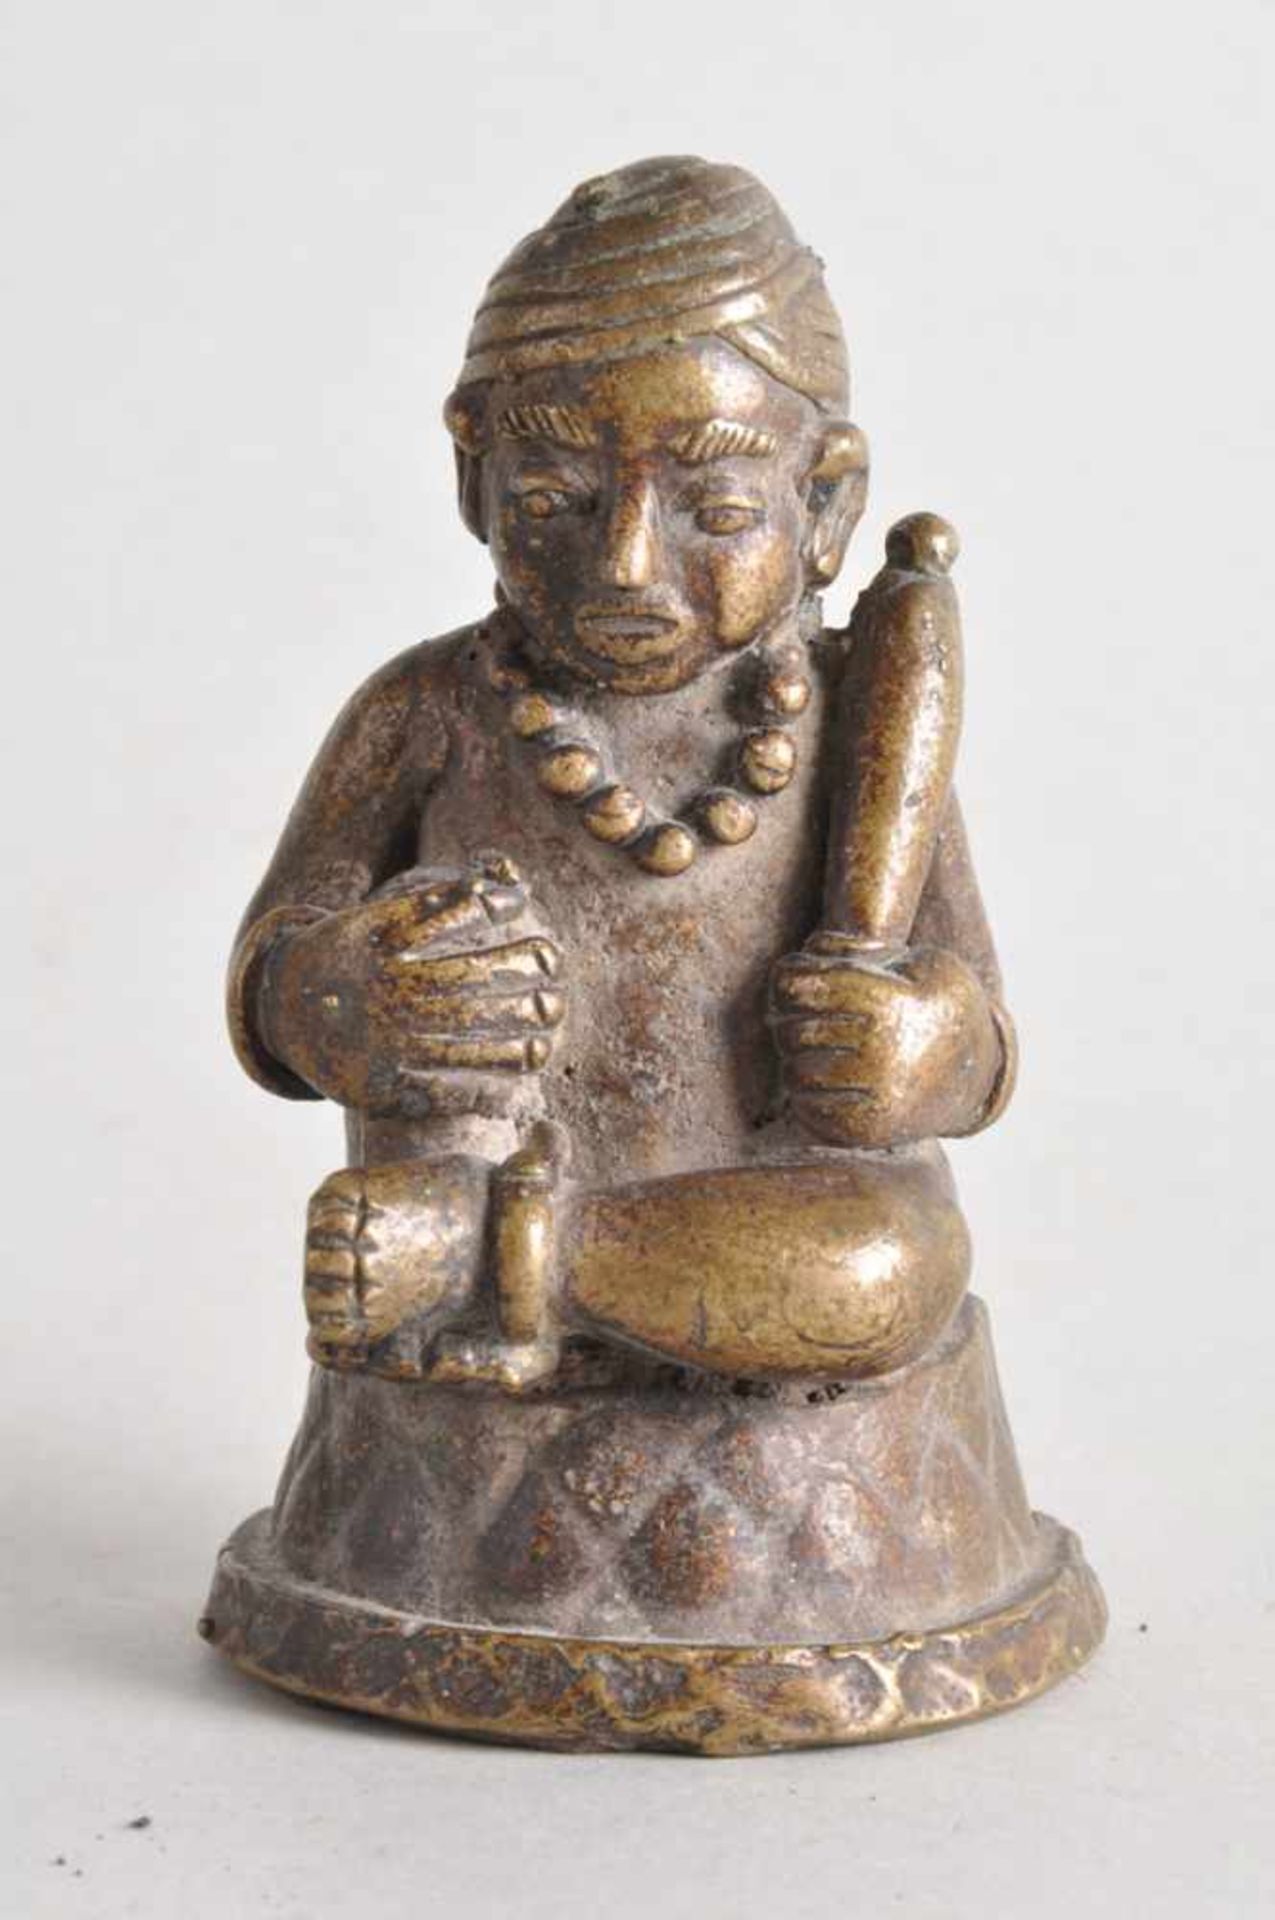 Asiatische Heiligenfigur mit Attribut.Bronze massiv, wohl 17./18. Jahrhundert. Höhe ca. 10 cm, Stand